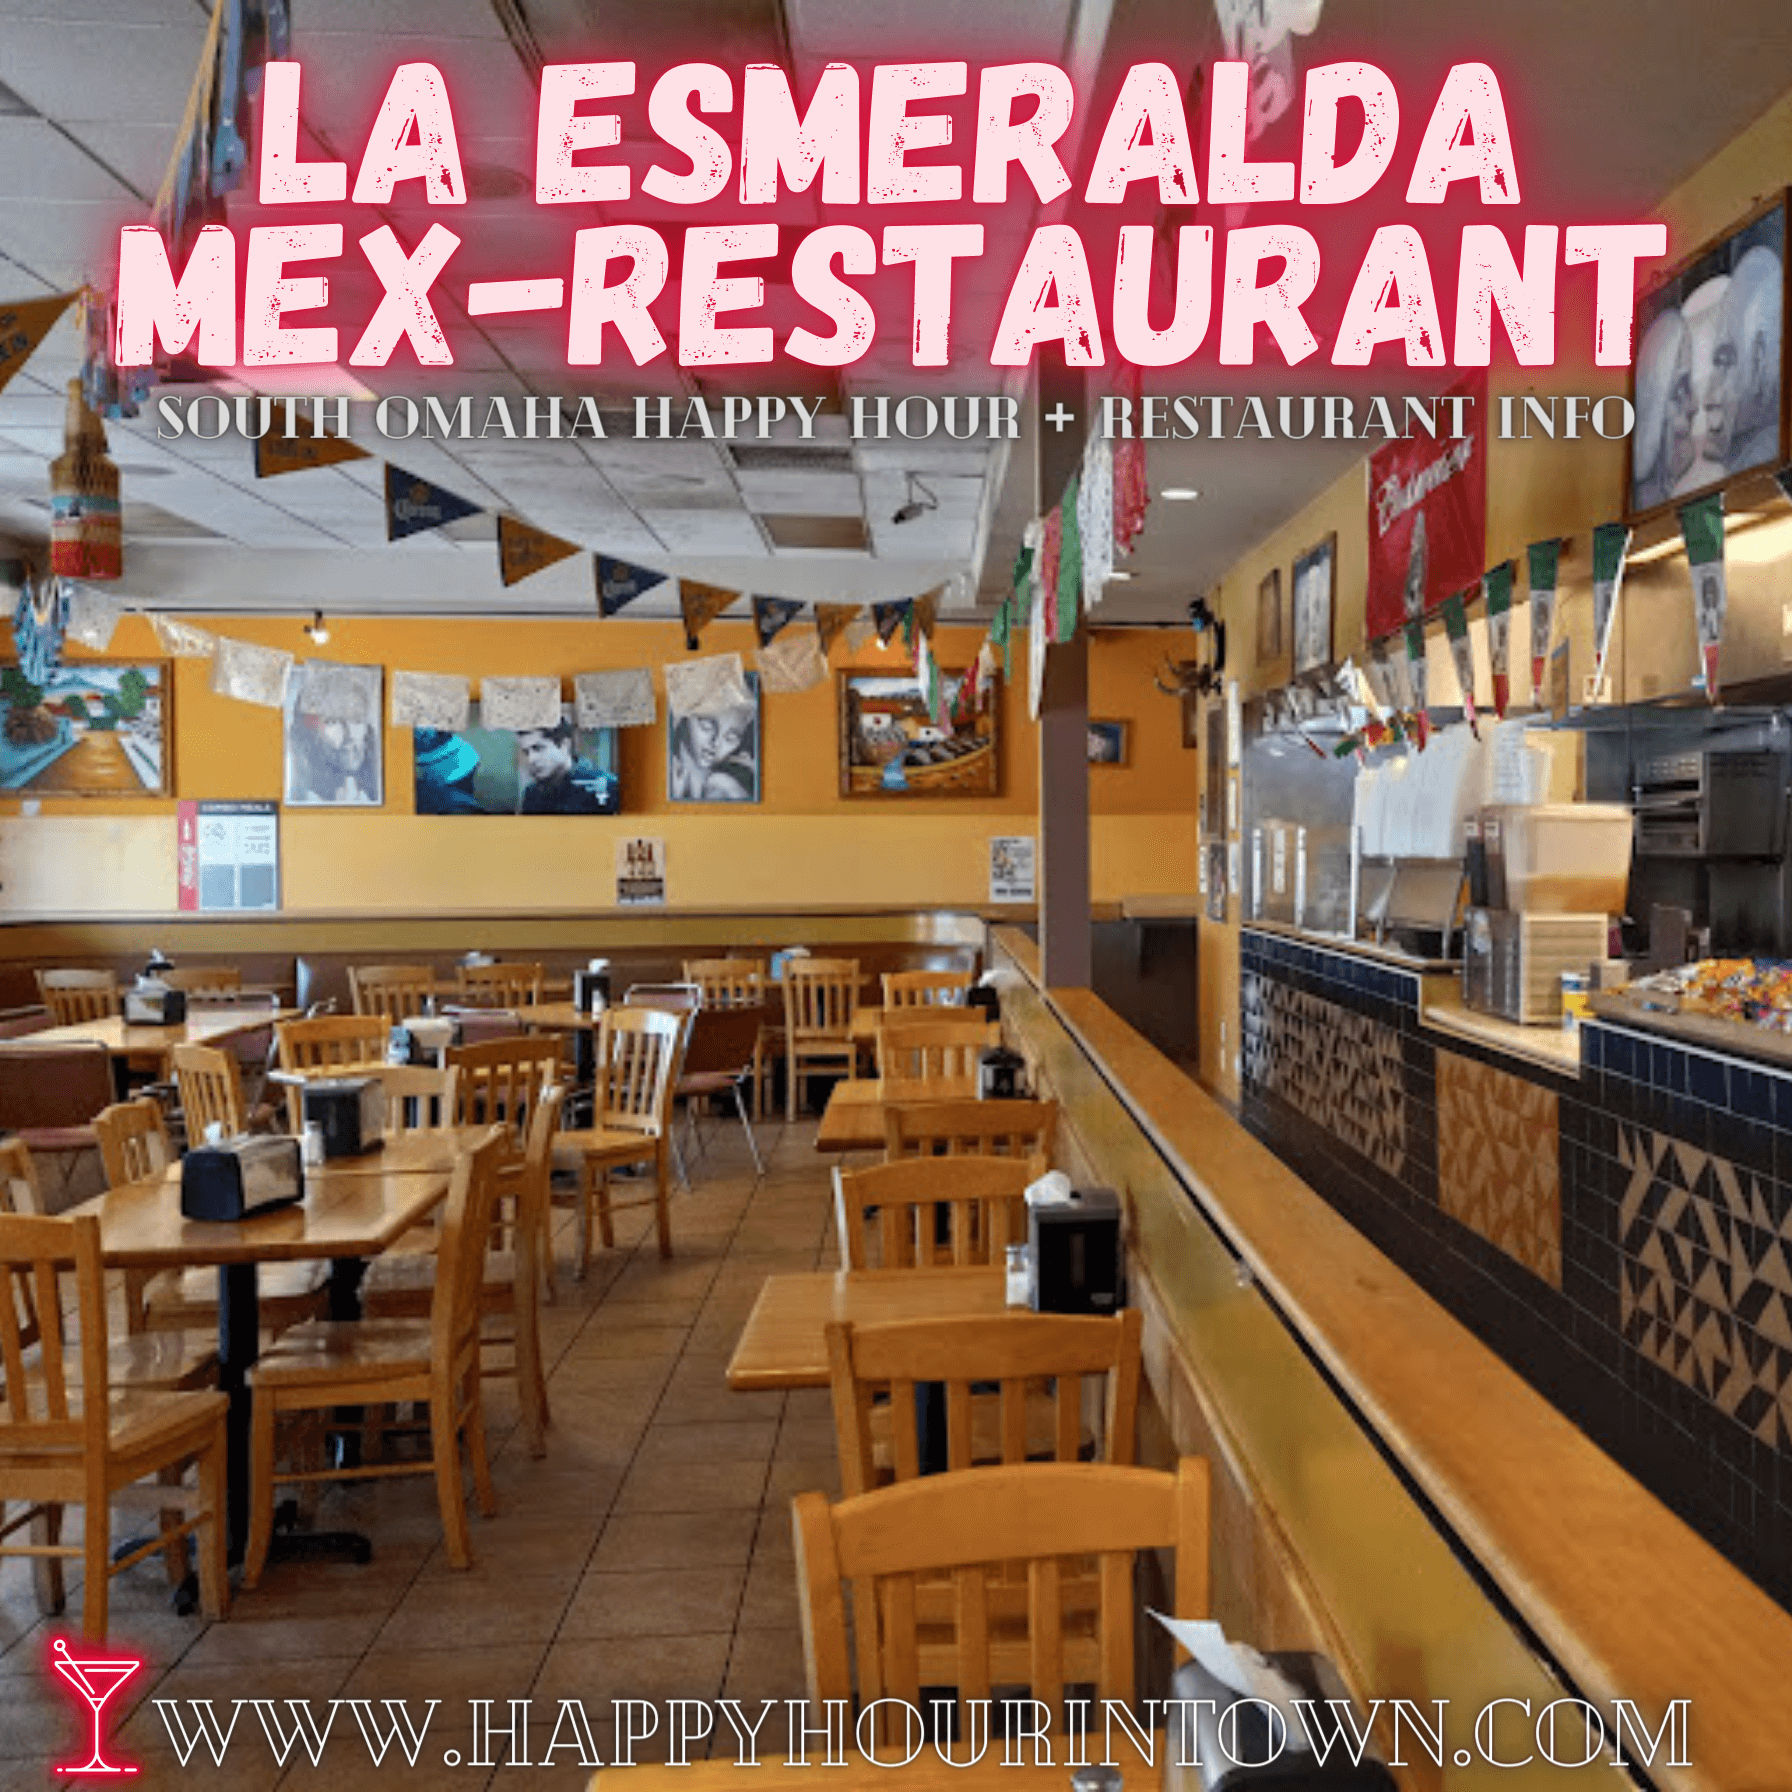 La Esmeralda Mex-Restaurant Omaha Happy Hour In Town